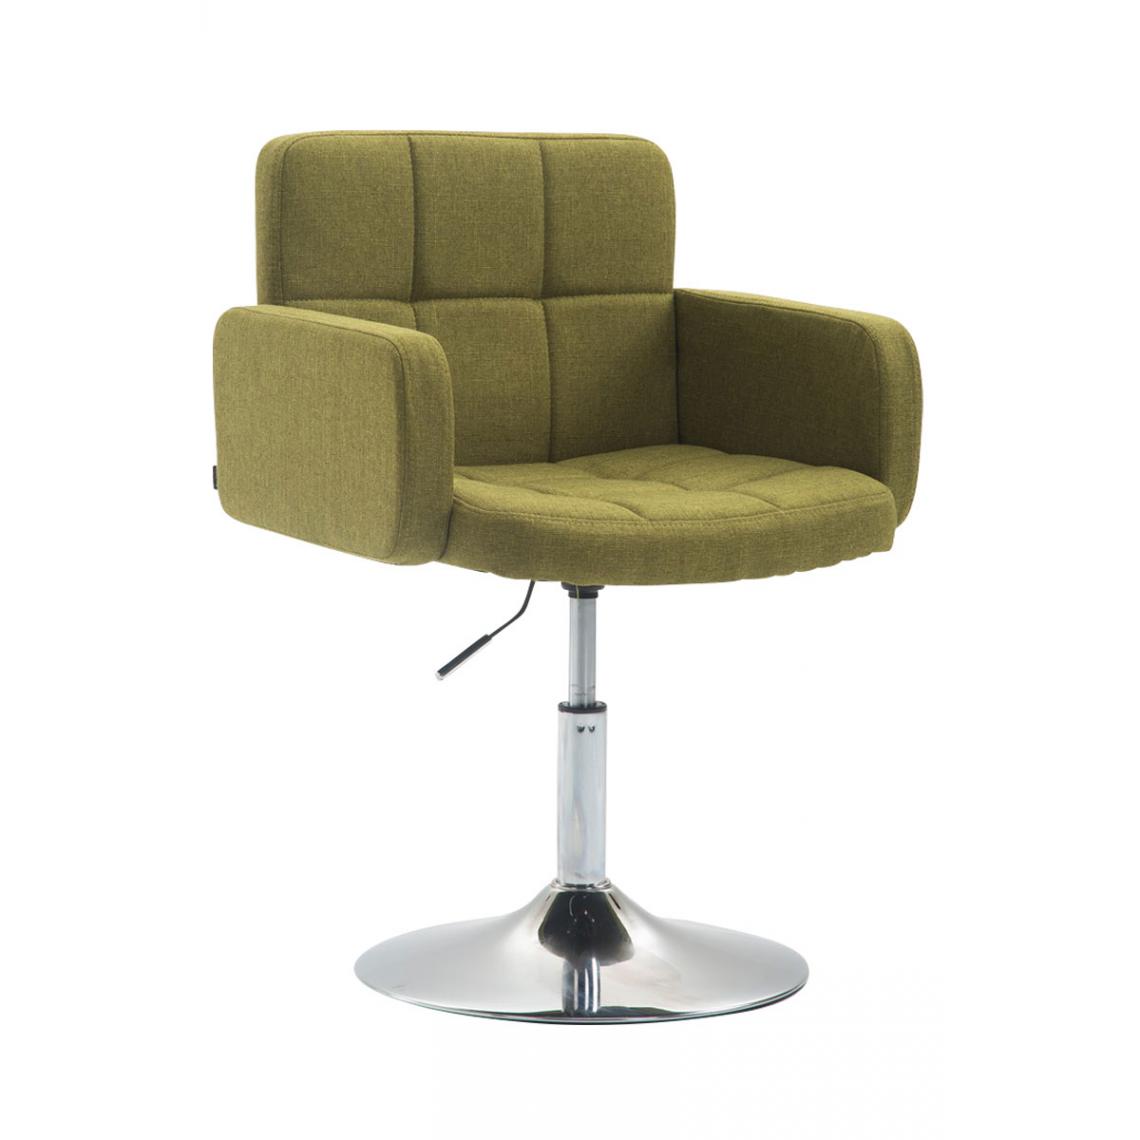 Icaverne - Esthetique Tissu pour chaise longue gamme Nouakchott Angeles couleur vert - Transats, chaises longues